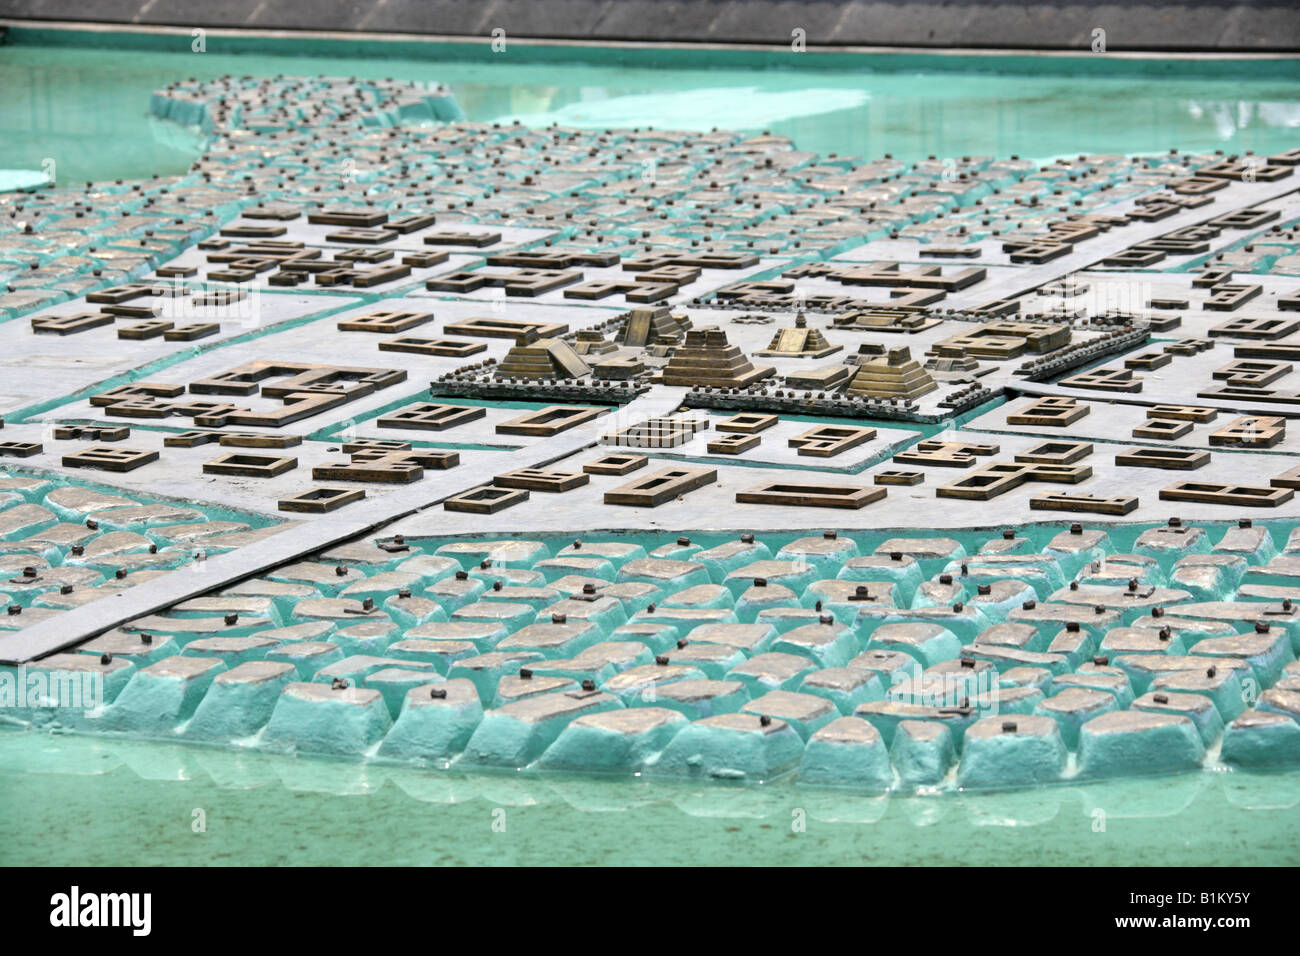 Ancient Aztec City Tenochtitlan